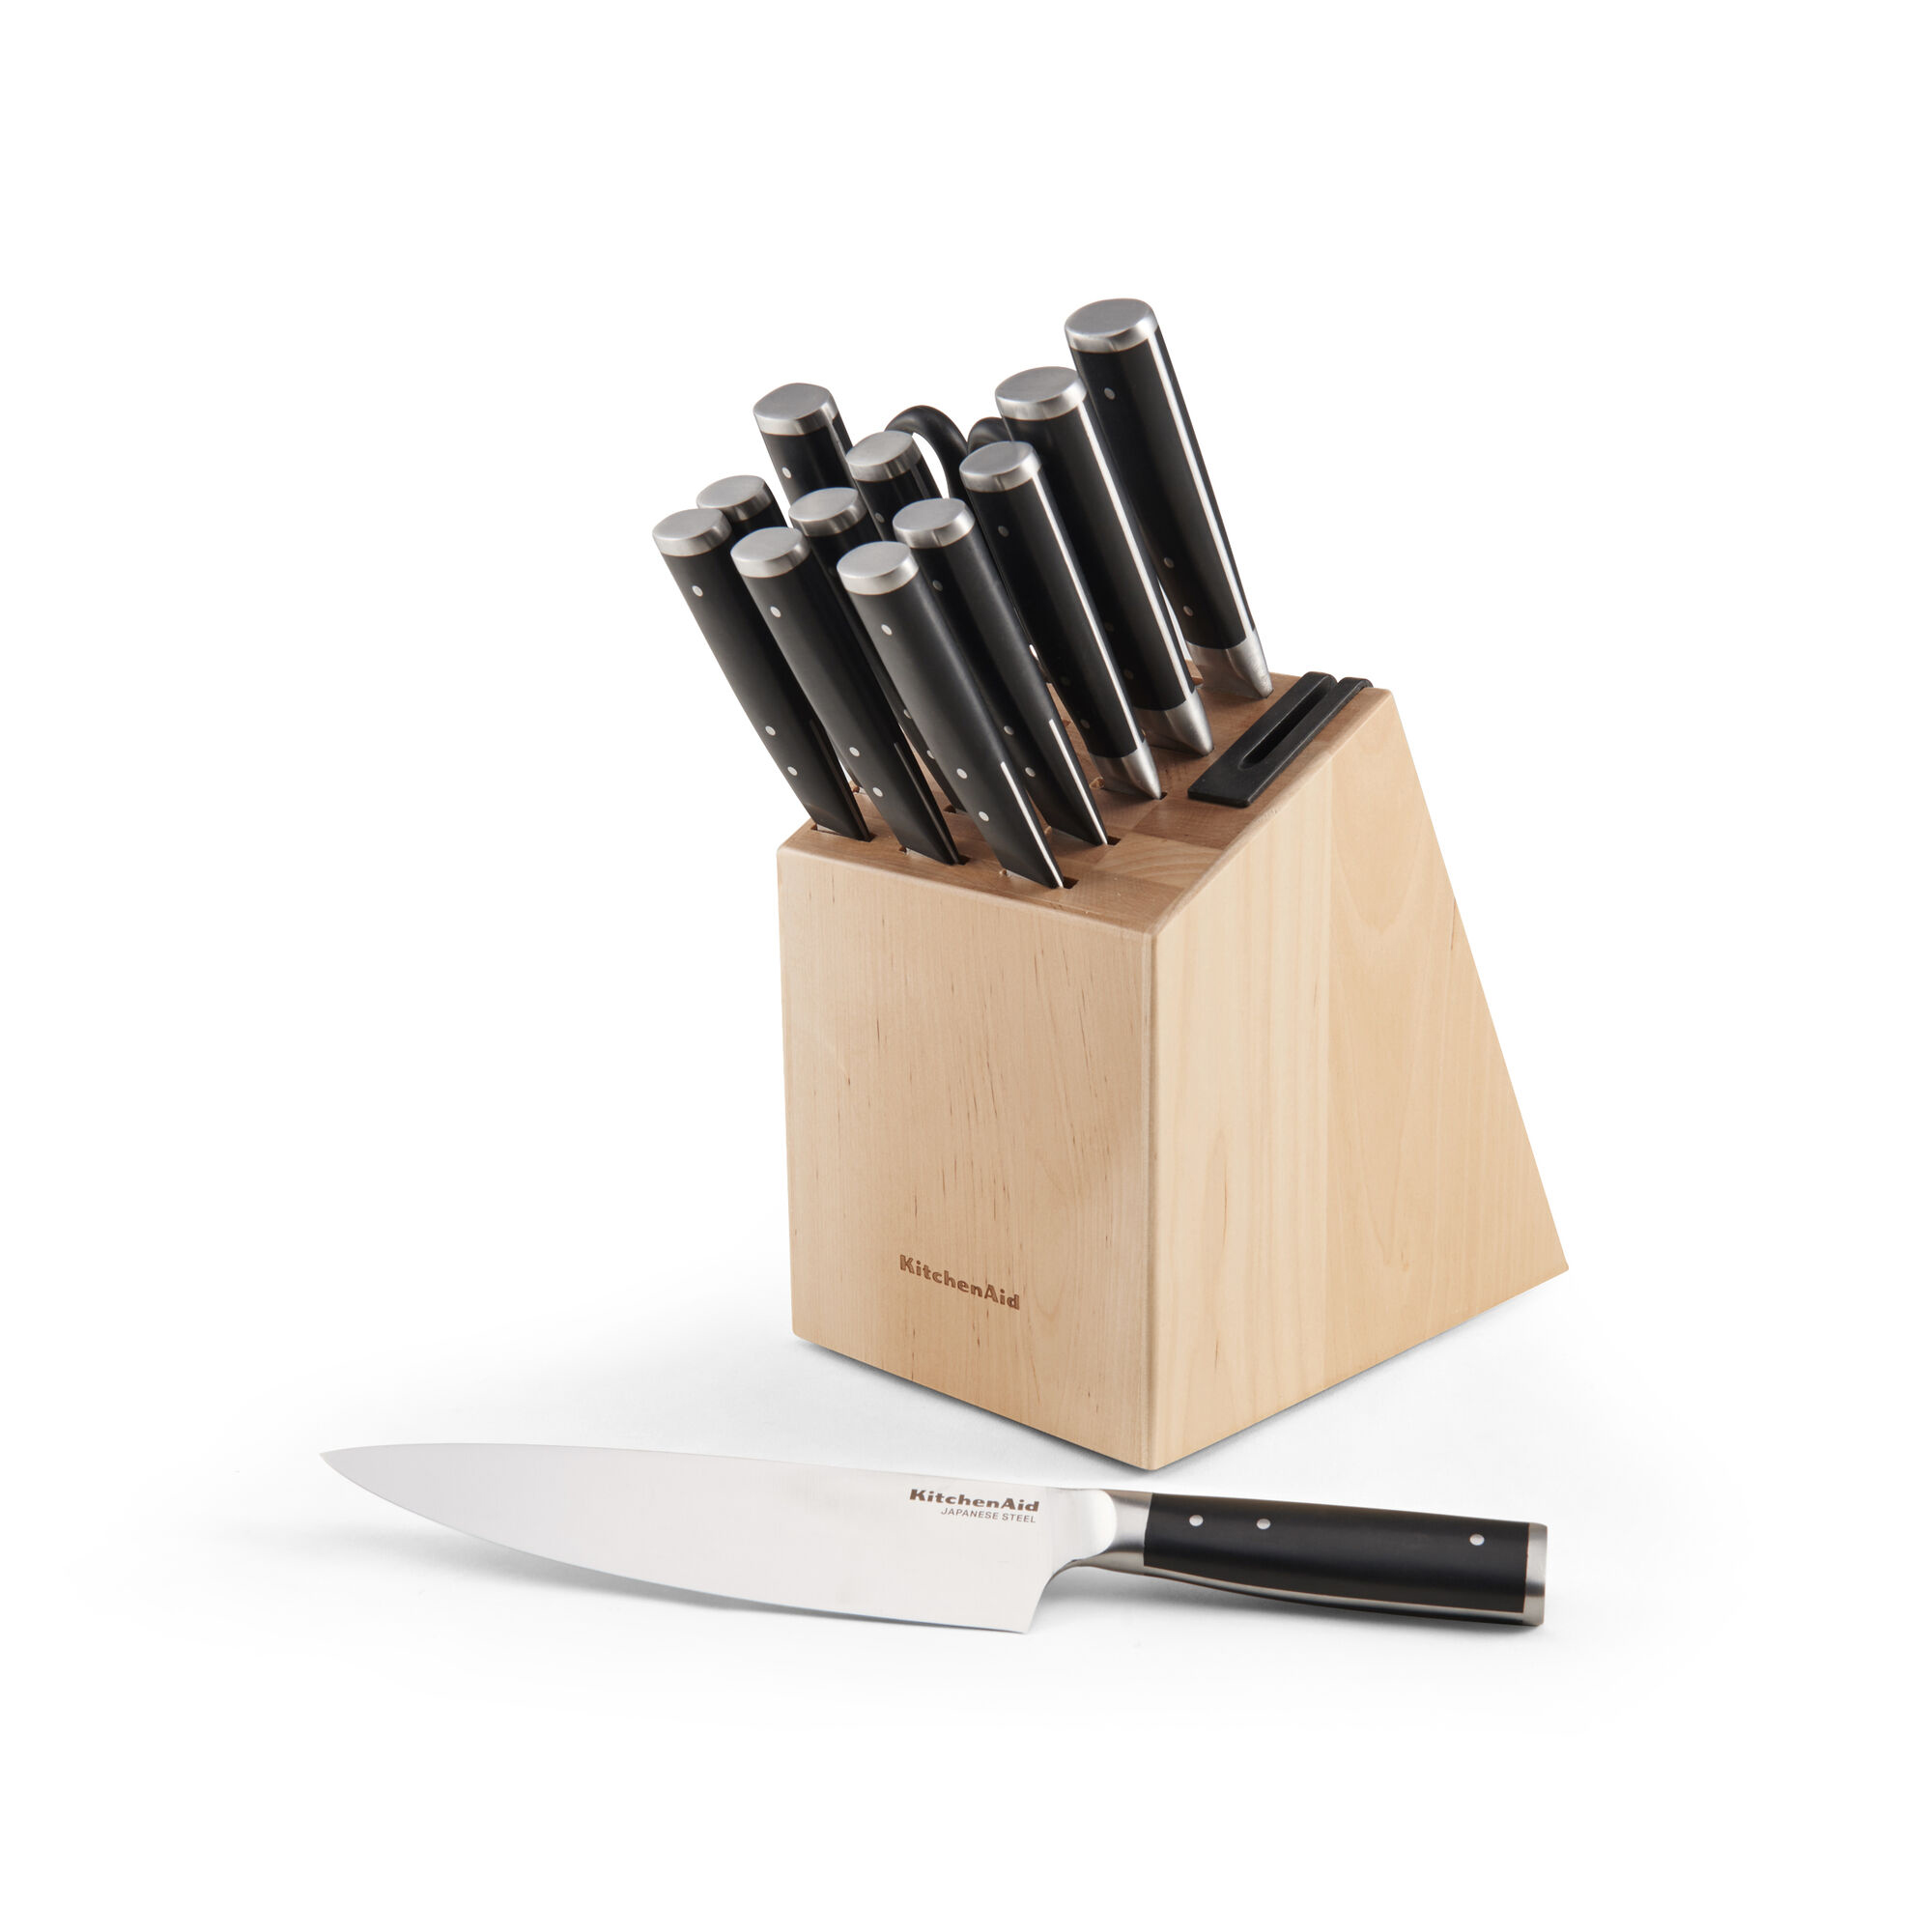 Juego de cuchillos blancos con bloque – Juego de cuchillos de cocina  blancos de acero inoxidable forjado de 14 piezas con tijeras de cocina